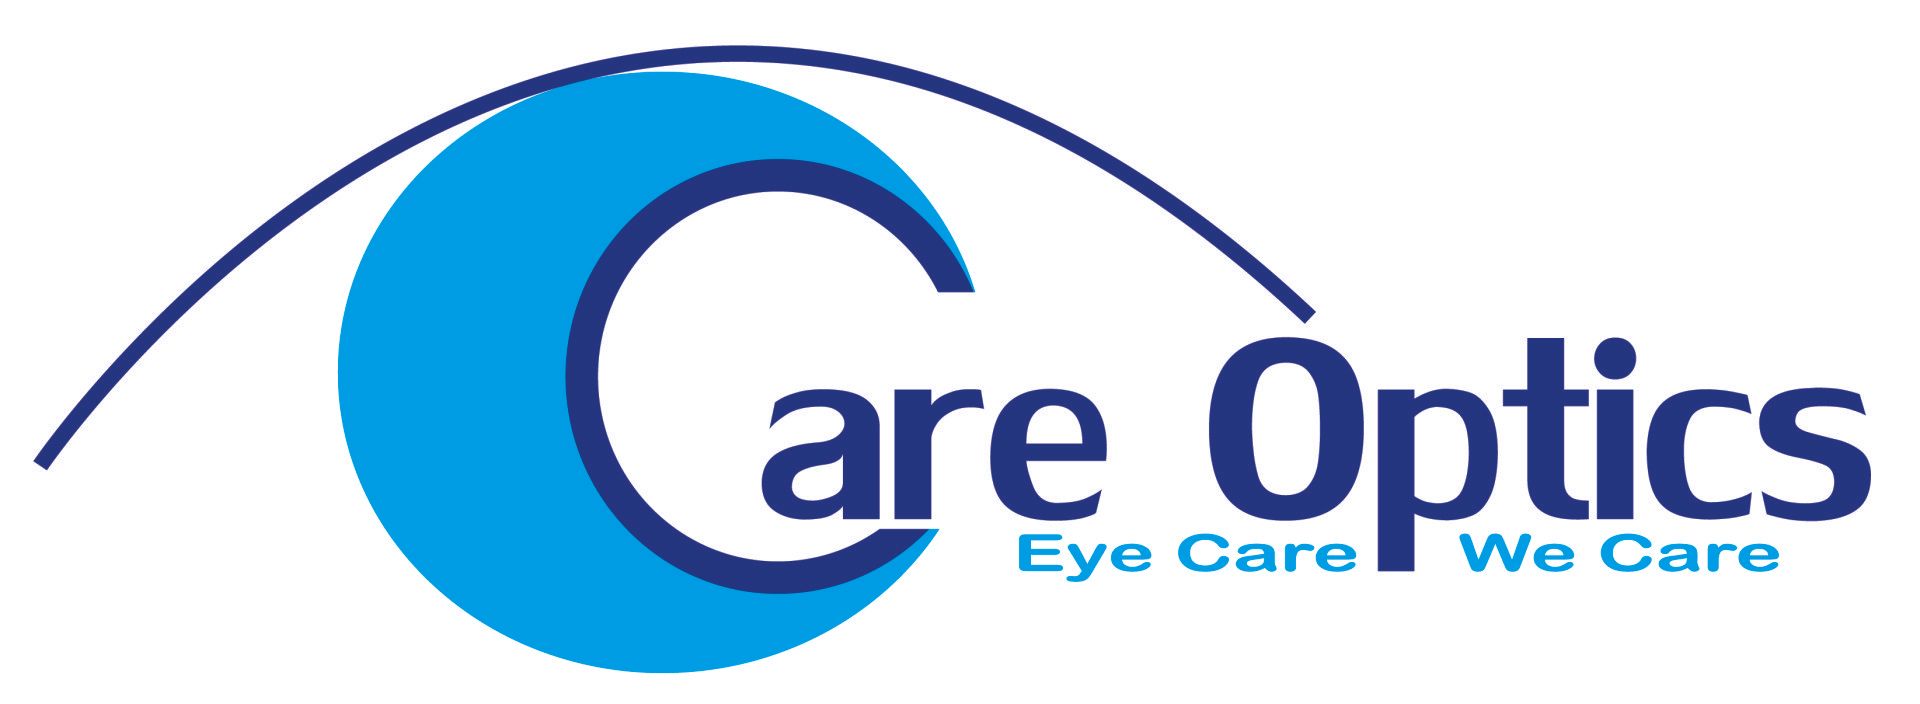 Care Optics